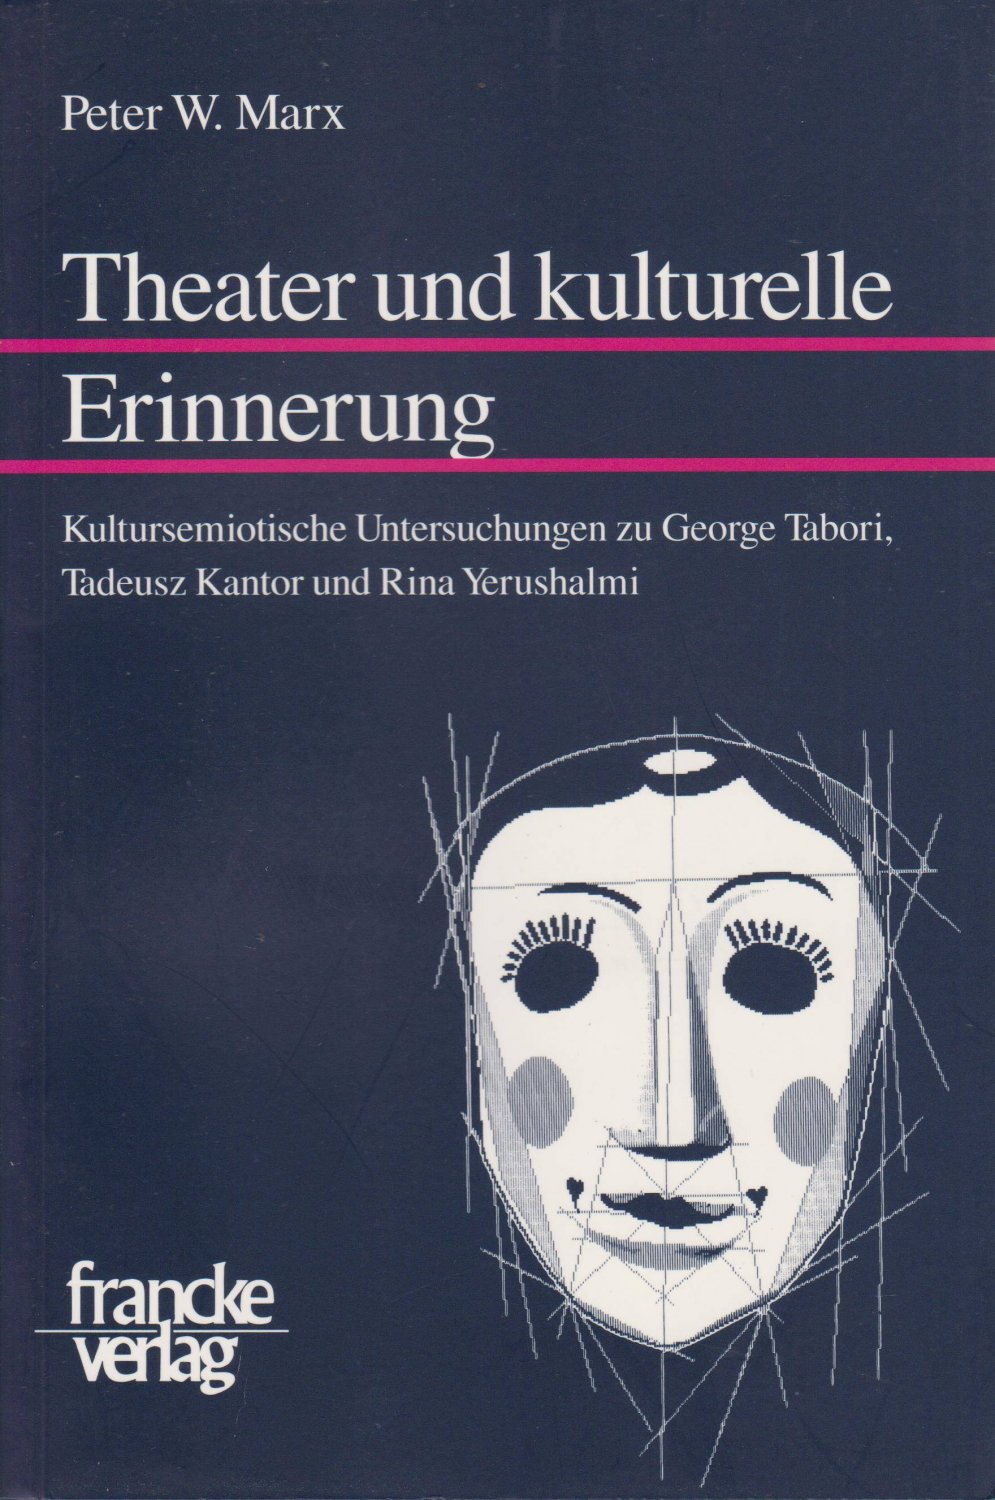 Theater und kulturelle Erinnerung. Kultursemiotische Untersuchungen zu George Tabori, Tadeusz Kantor und Rina Yerushalmi. - MARX, Peter W.